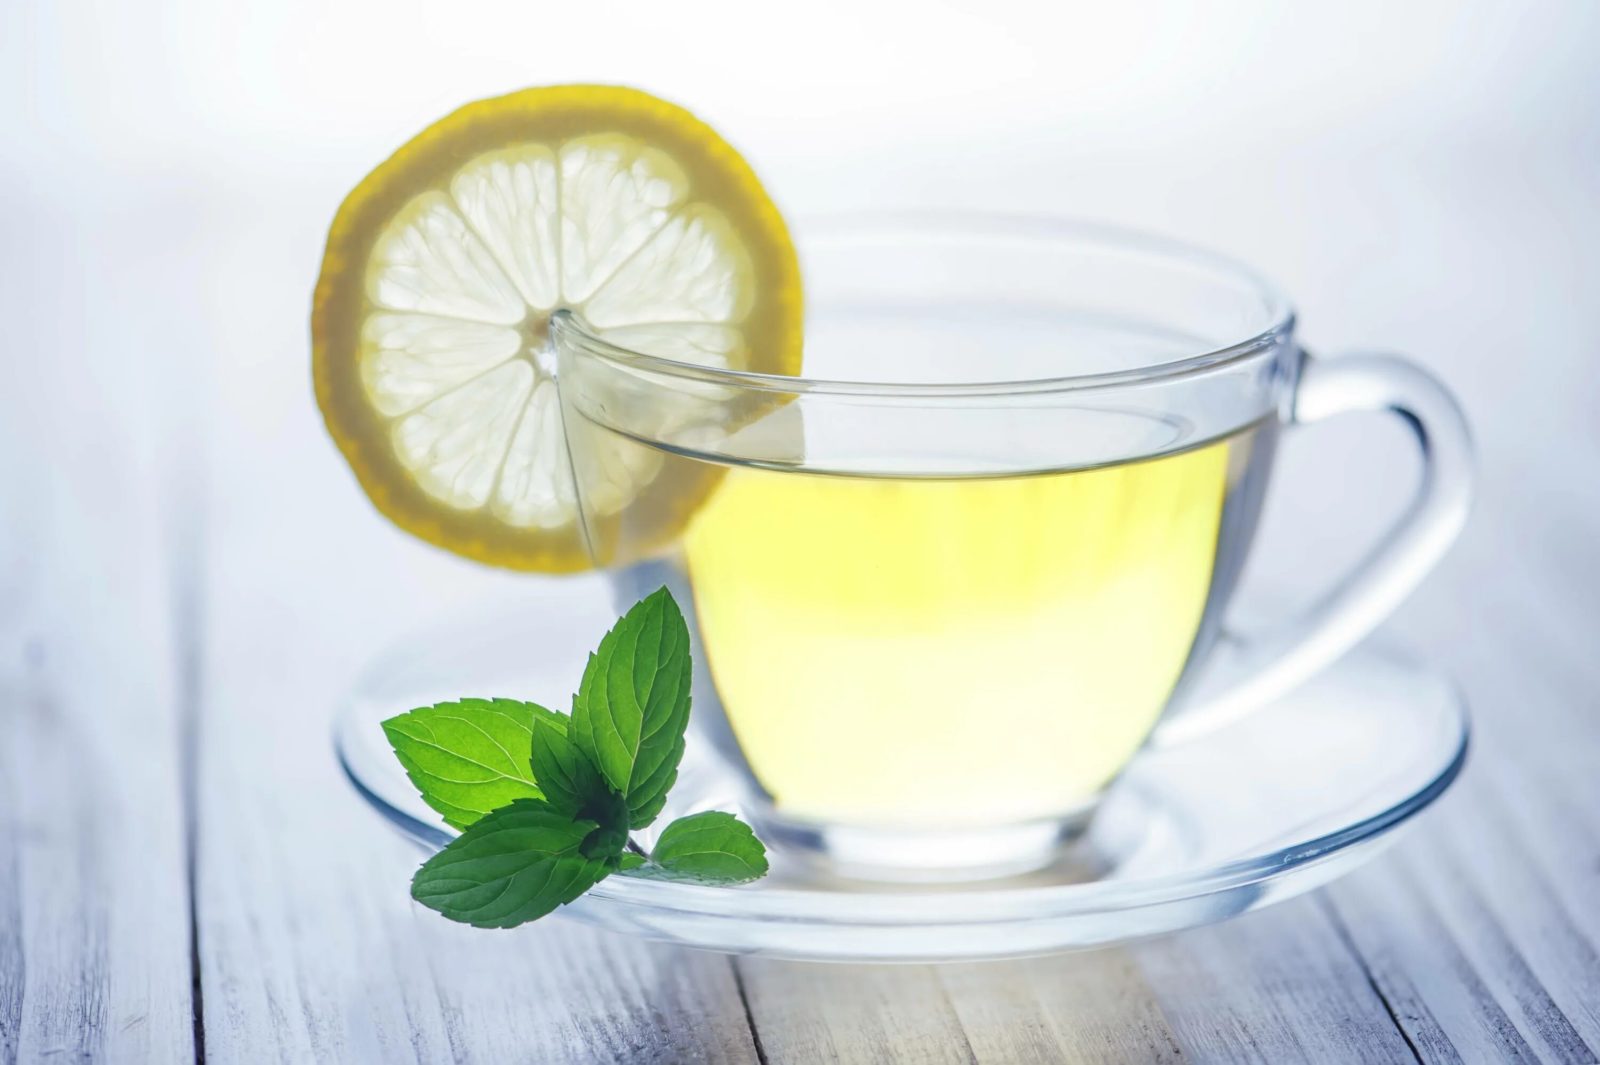 Что произойдёт с организмом, если пить зеленый чай ежедневно